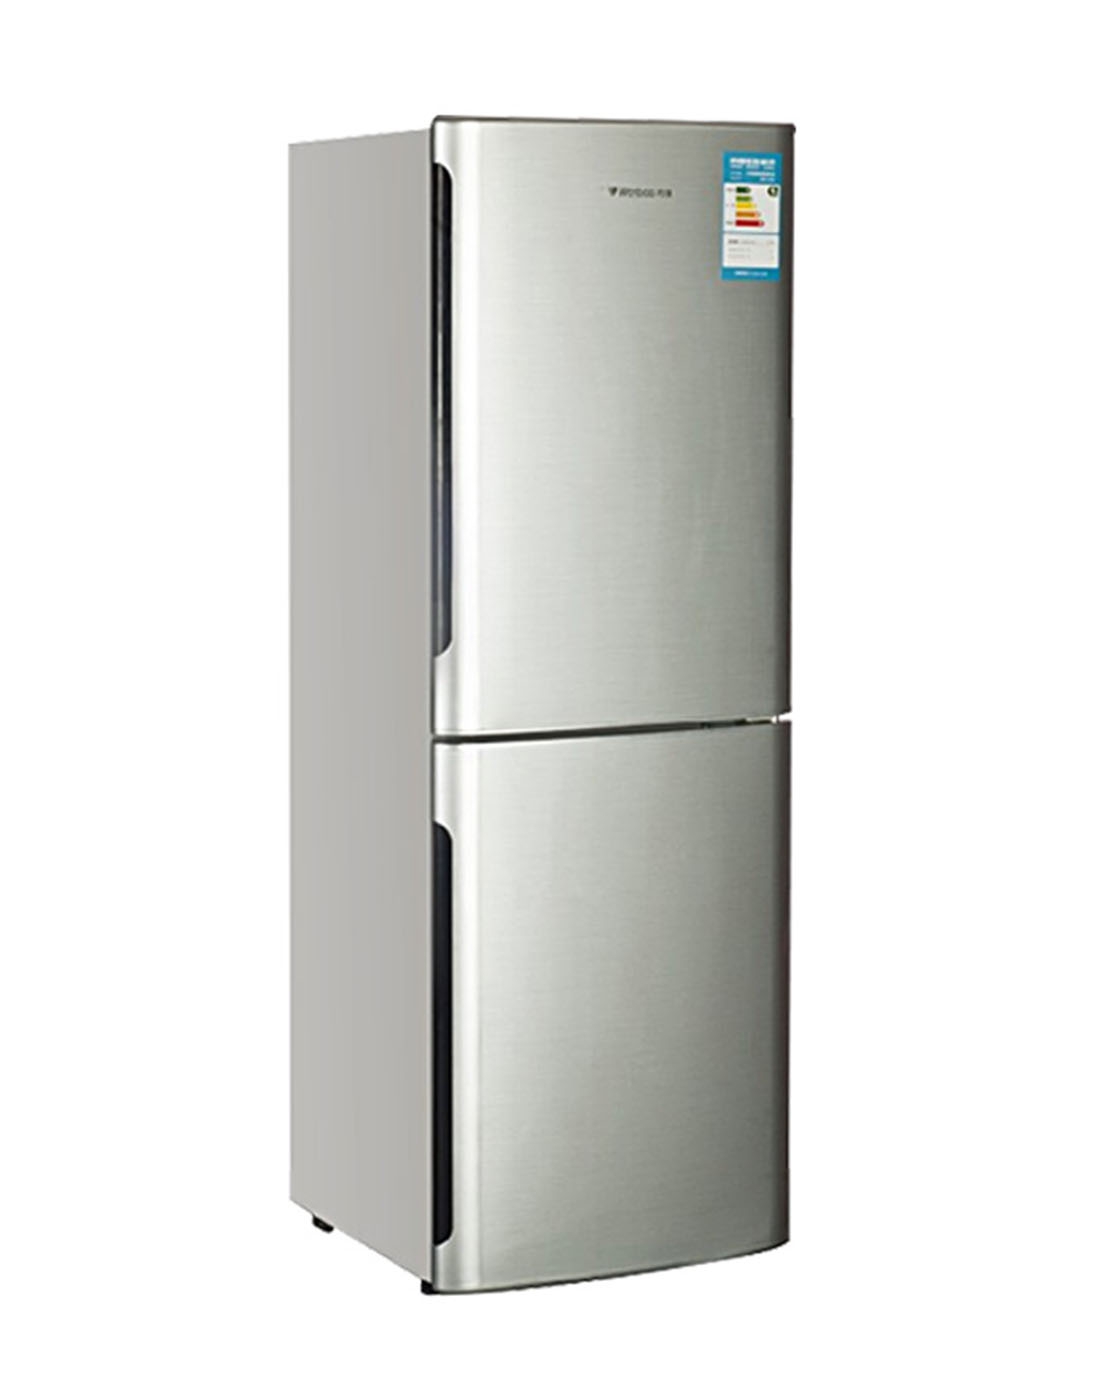 万宝bcd-172d冷藏冷冻超级节能双门加厚不锈钢电冰箱超耐用4天1度电